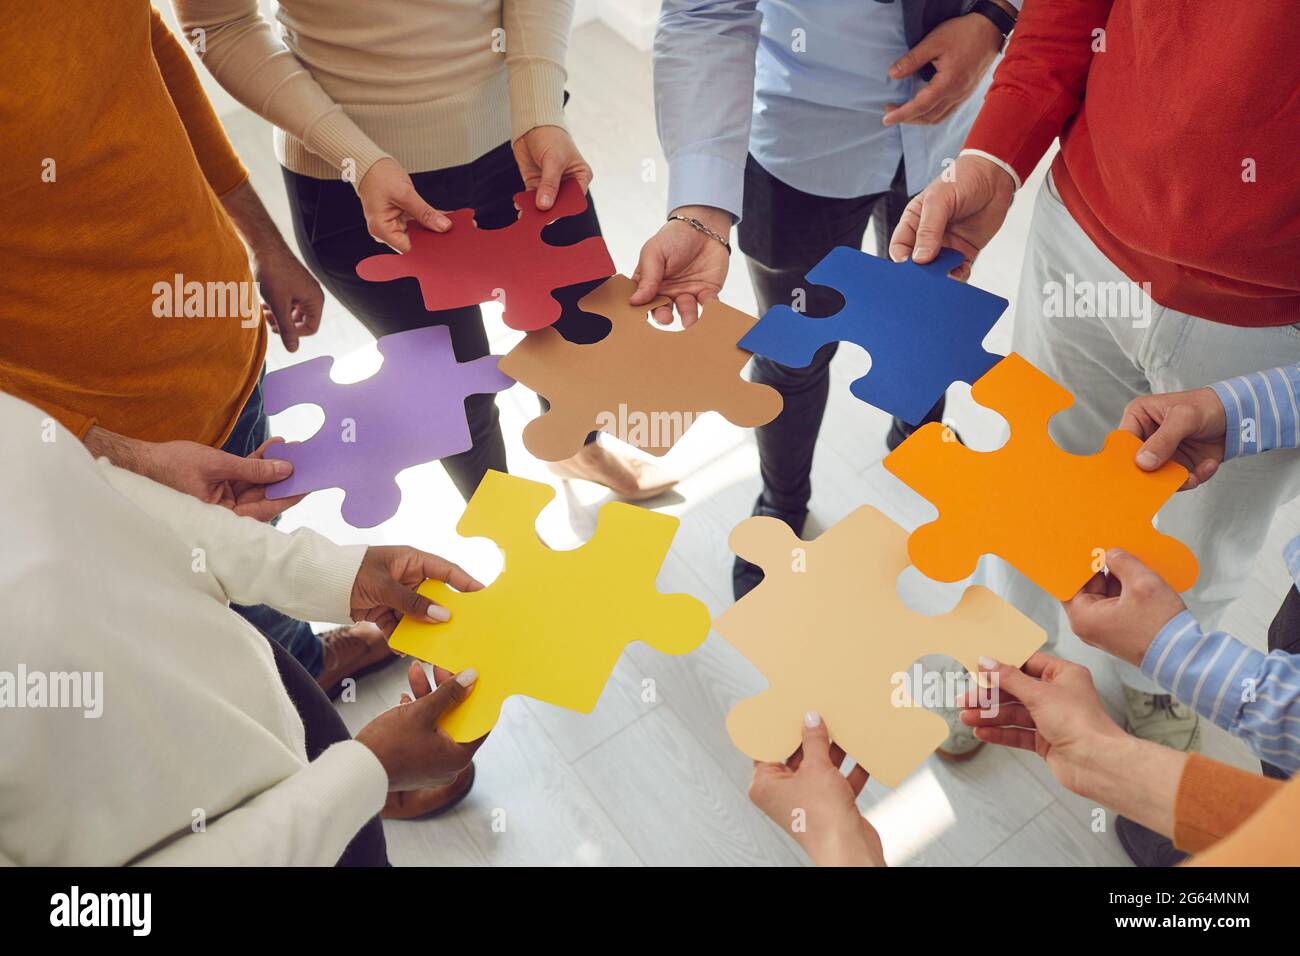 Une équipe de personnes s'associe à des pièces de puzzle colorées pour trouver une solution et un travail d'équipe Banque D'Images